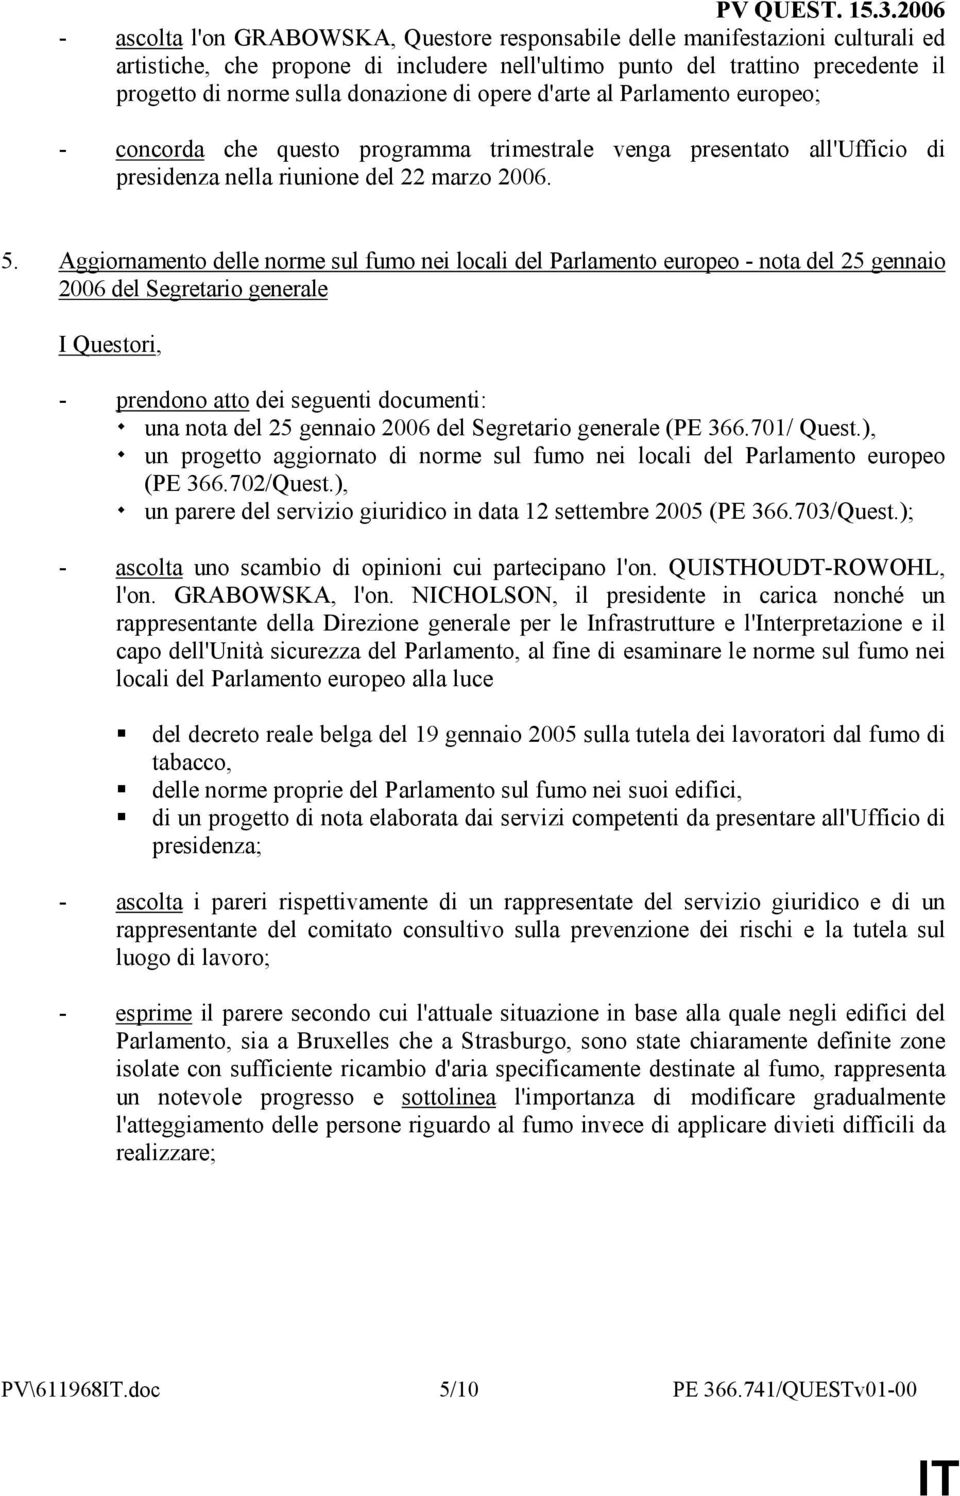 Aggiornamento delle norme sul fumo nei locali del Parlamento europeo - nota del 25 gennaio 2006 del Segretario generale - prendono atto dei seguenti documenti: una nota del 25 gennaio 2006 del